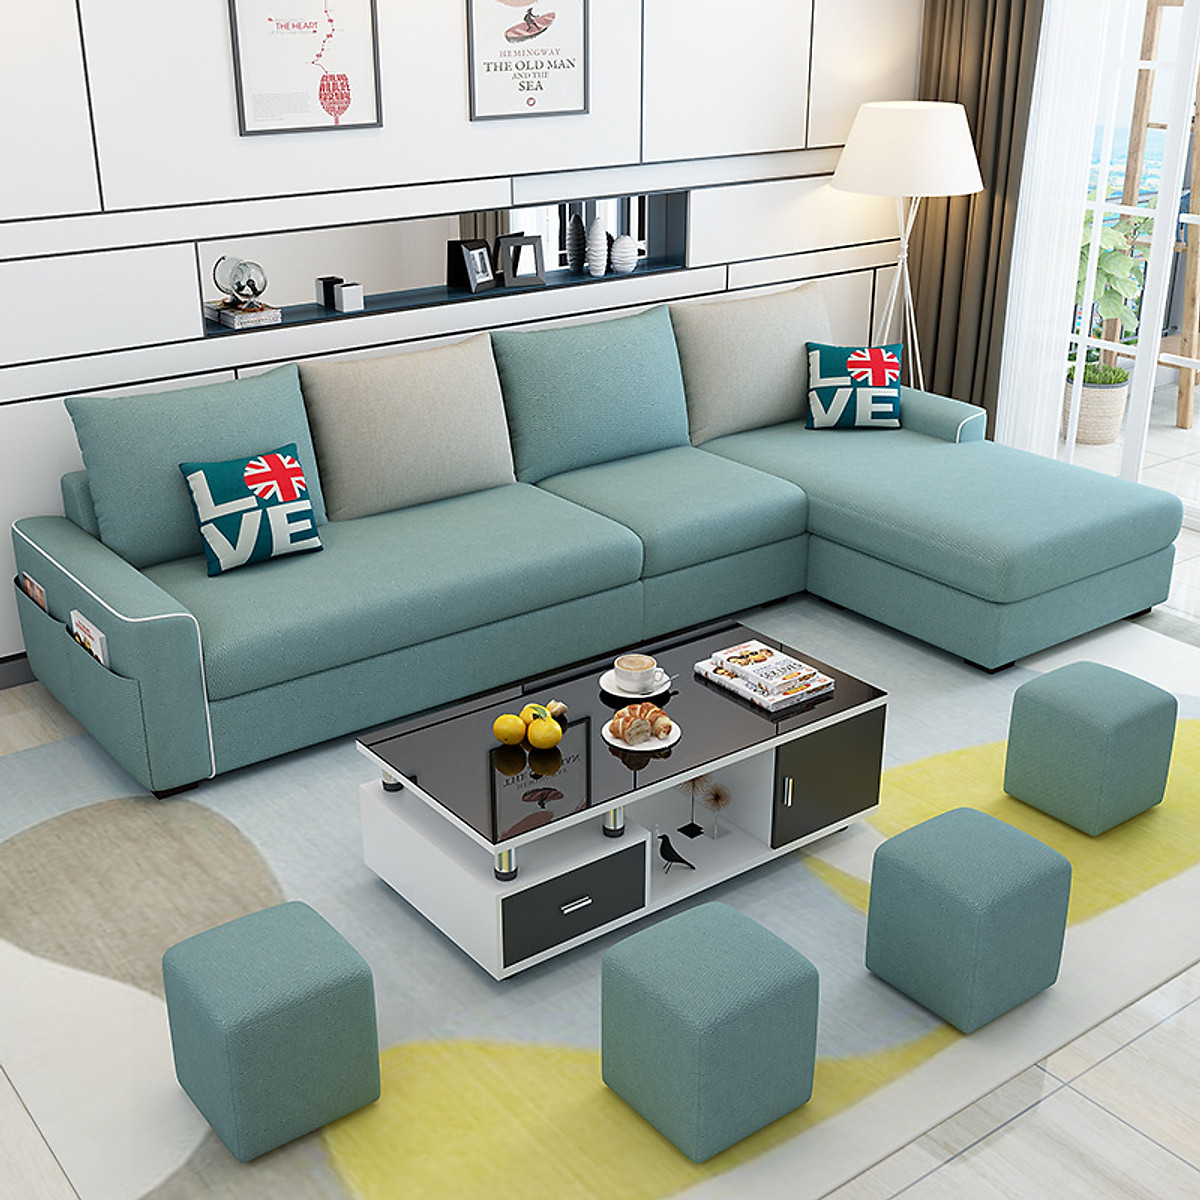 Năm 2024, bạn đang tìm kiếm giải pháp cho phòng khách nhỏ? Sofa phòng khách nhỏ gọn là sự lựa chọn hoàn hảo cho không gian nhỏ của bạn. Với chất liệu cao cấp và thiết kế hiện đại, bạn sẽ có một chiếc sofa đẹp và tiện lợi, tiết kiệm không gian cho phòng khách của mình.